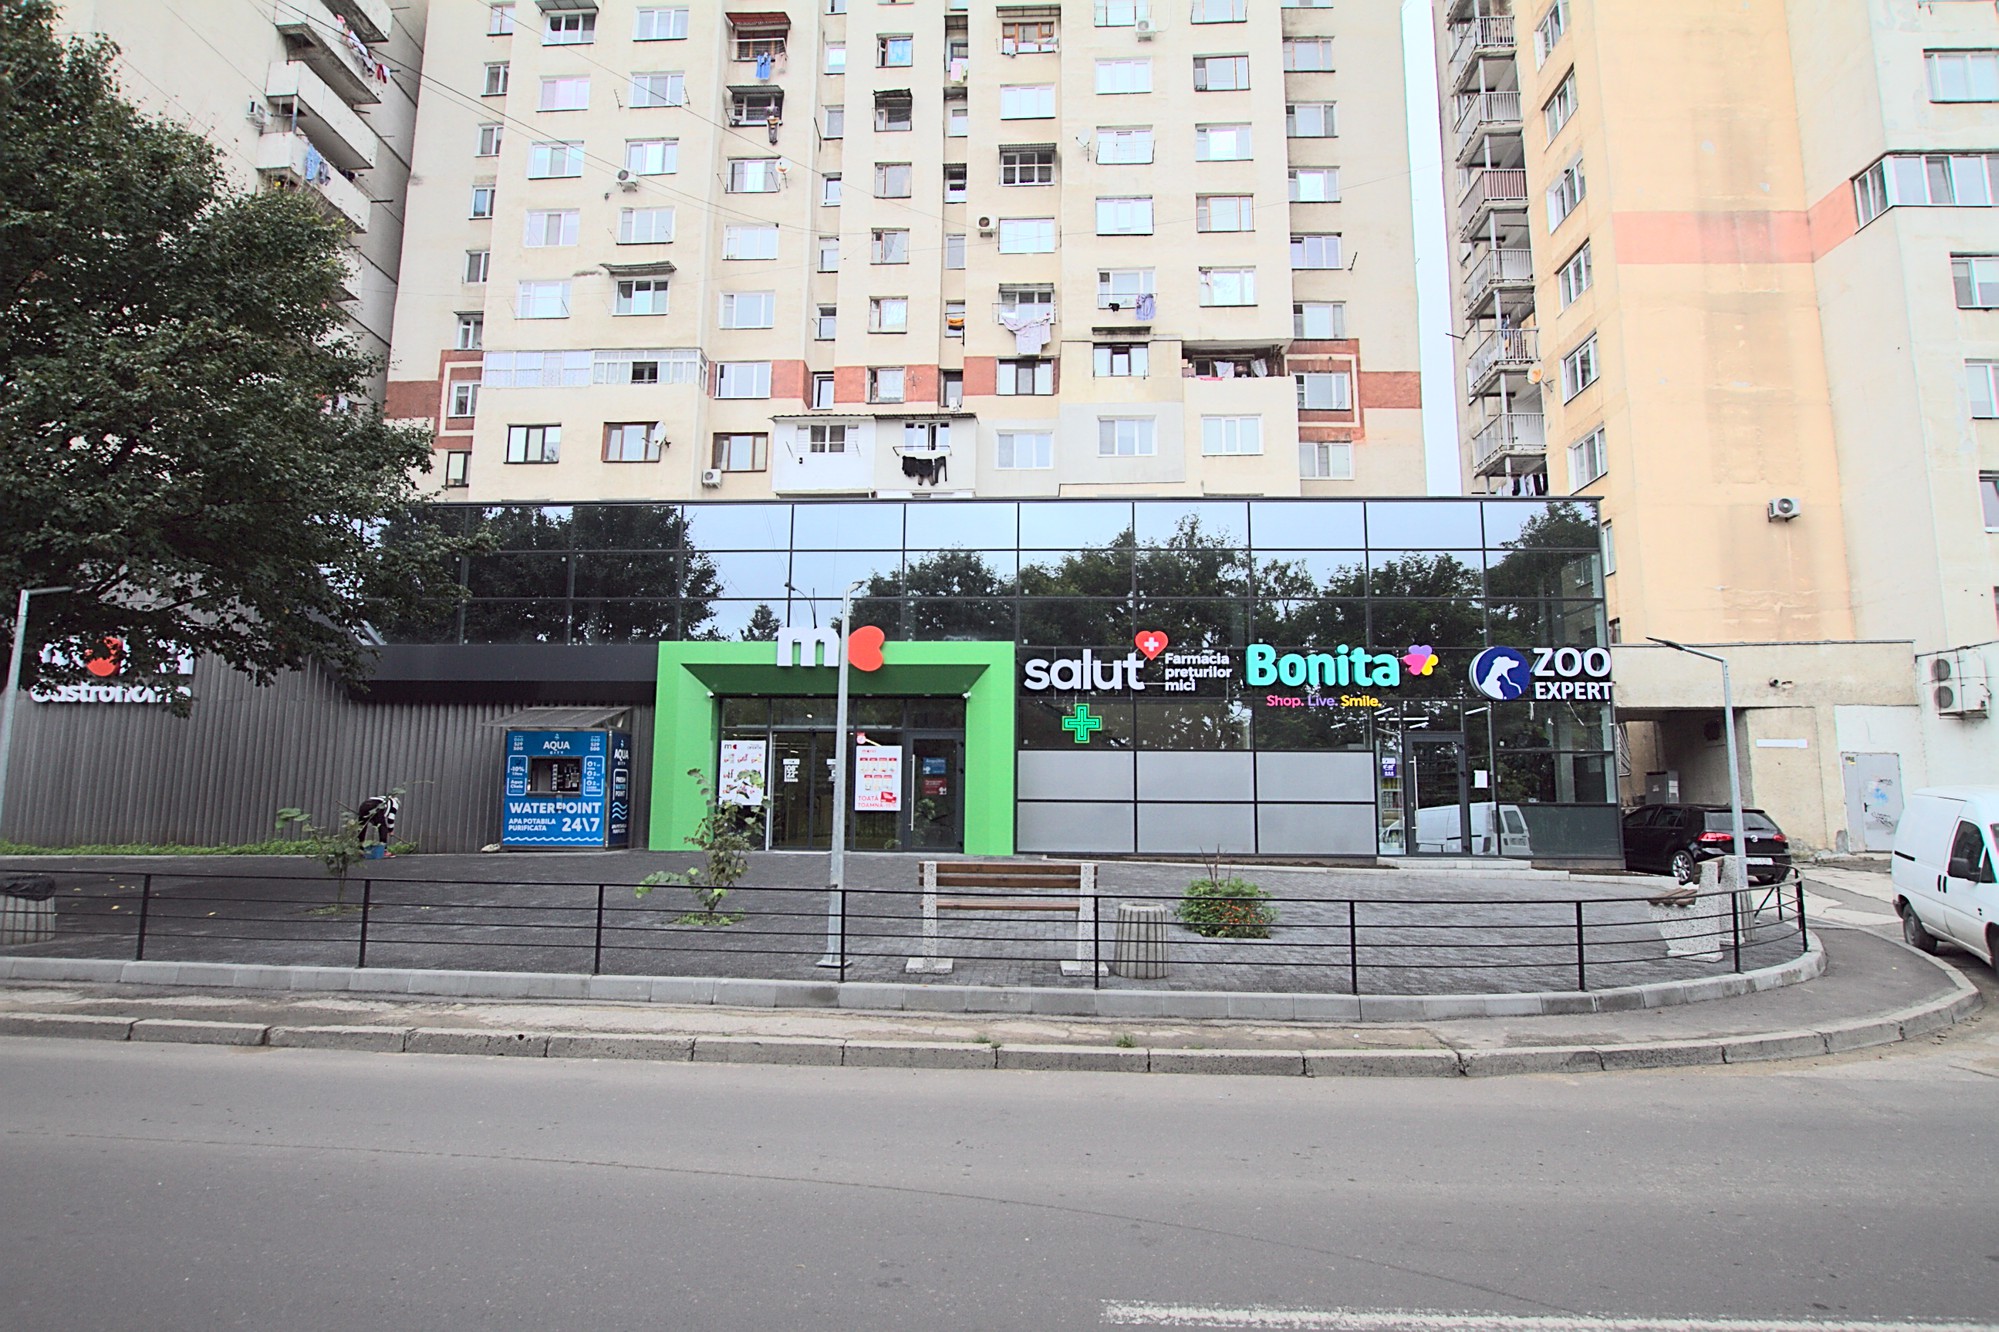 Cozy Nest ist ein 1 Zimmer Apartment zur Miete in Chisinau, Moldova